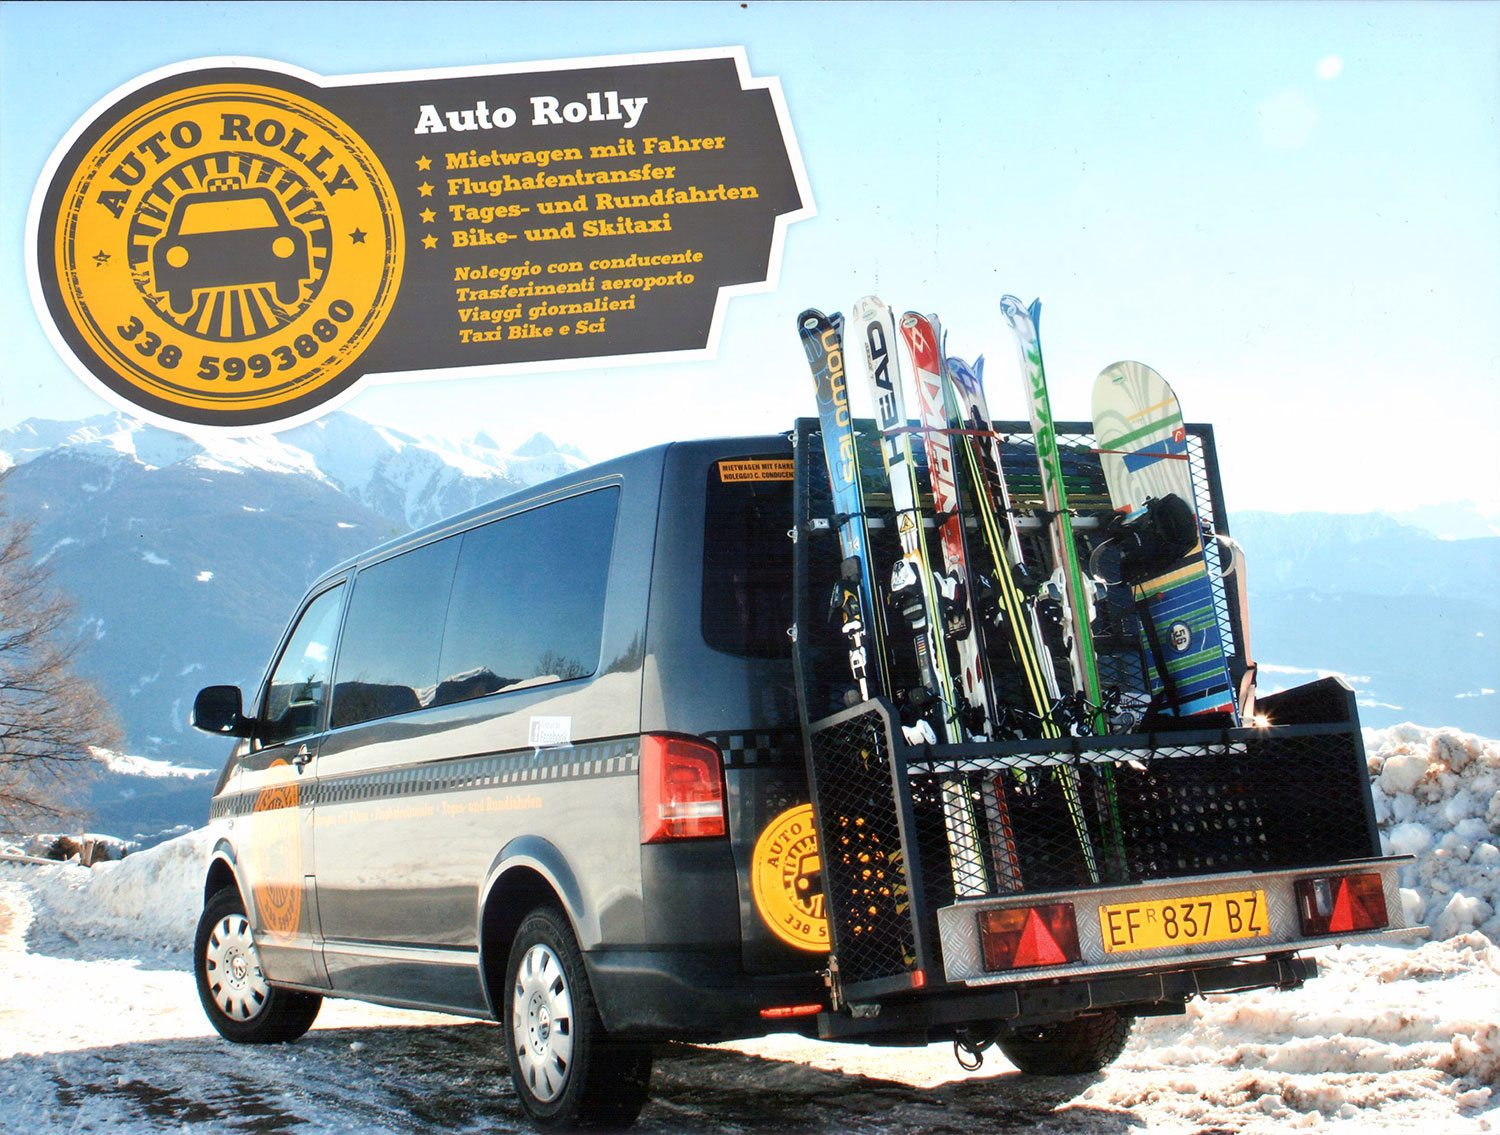 Auto Rolly - Südtiroler Ski- und Snowboard Shuttle